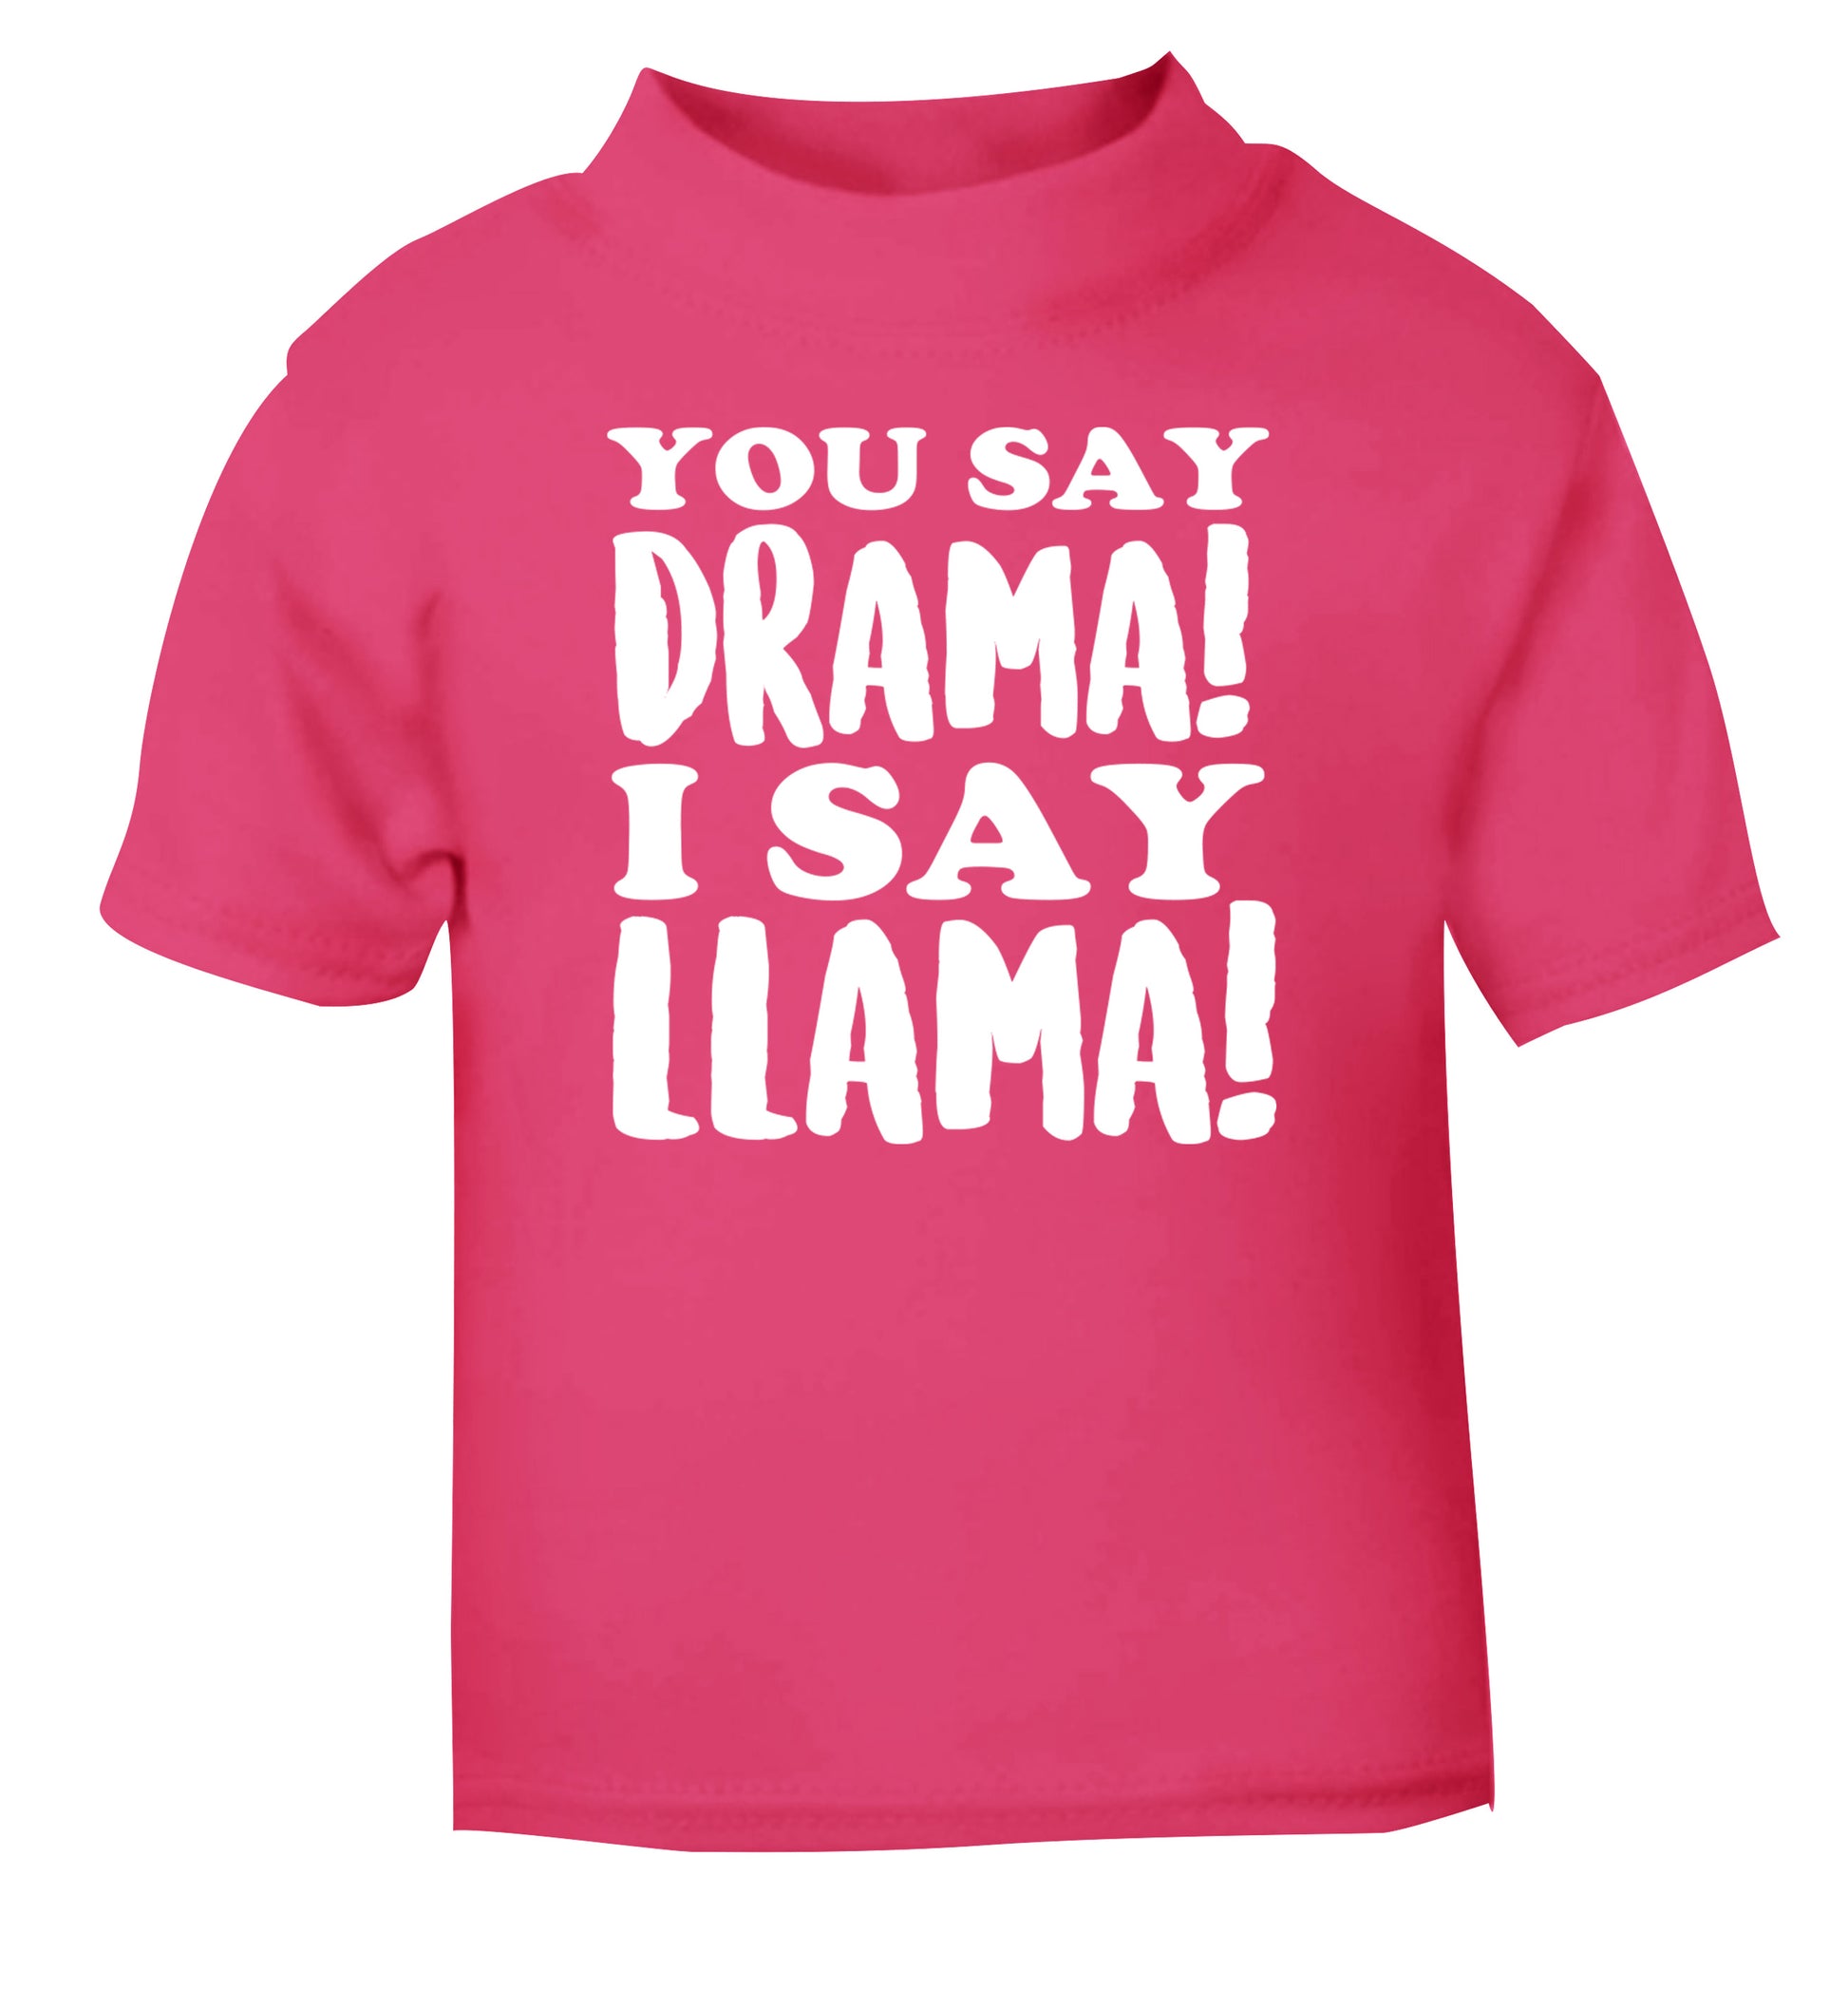 You say drama I say llama! pink Baby Toddler Tshirt 2 Years